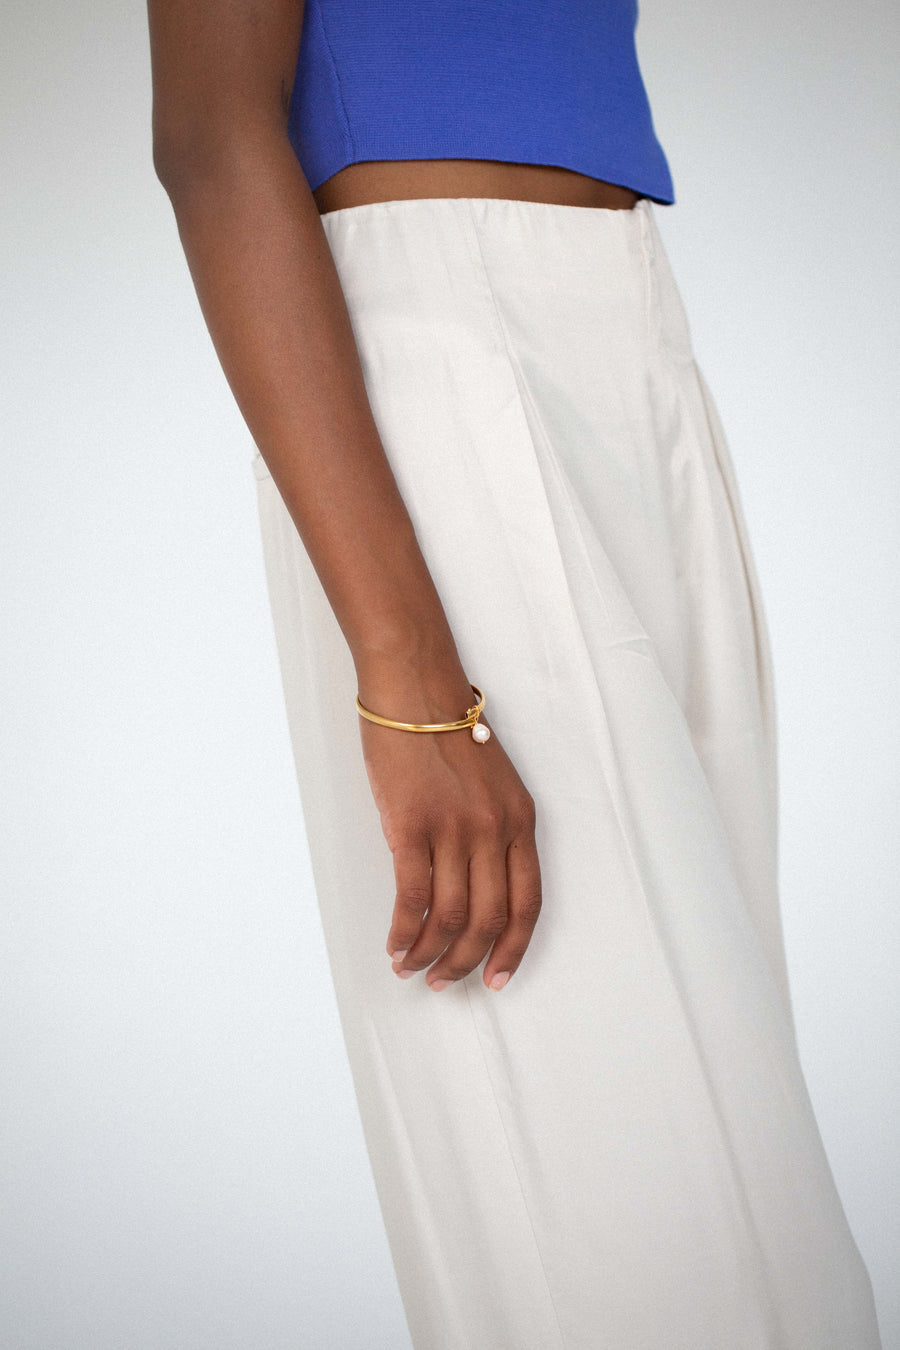 SAMSA Golden Single Pearl Bracelet